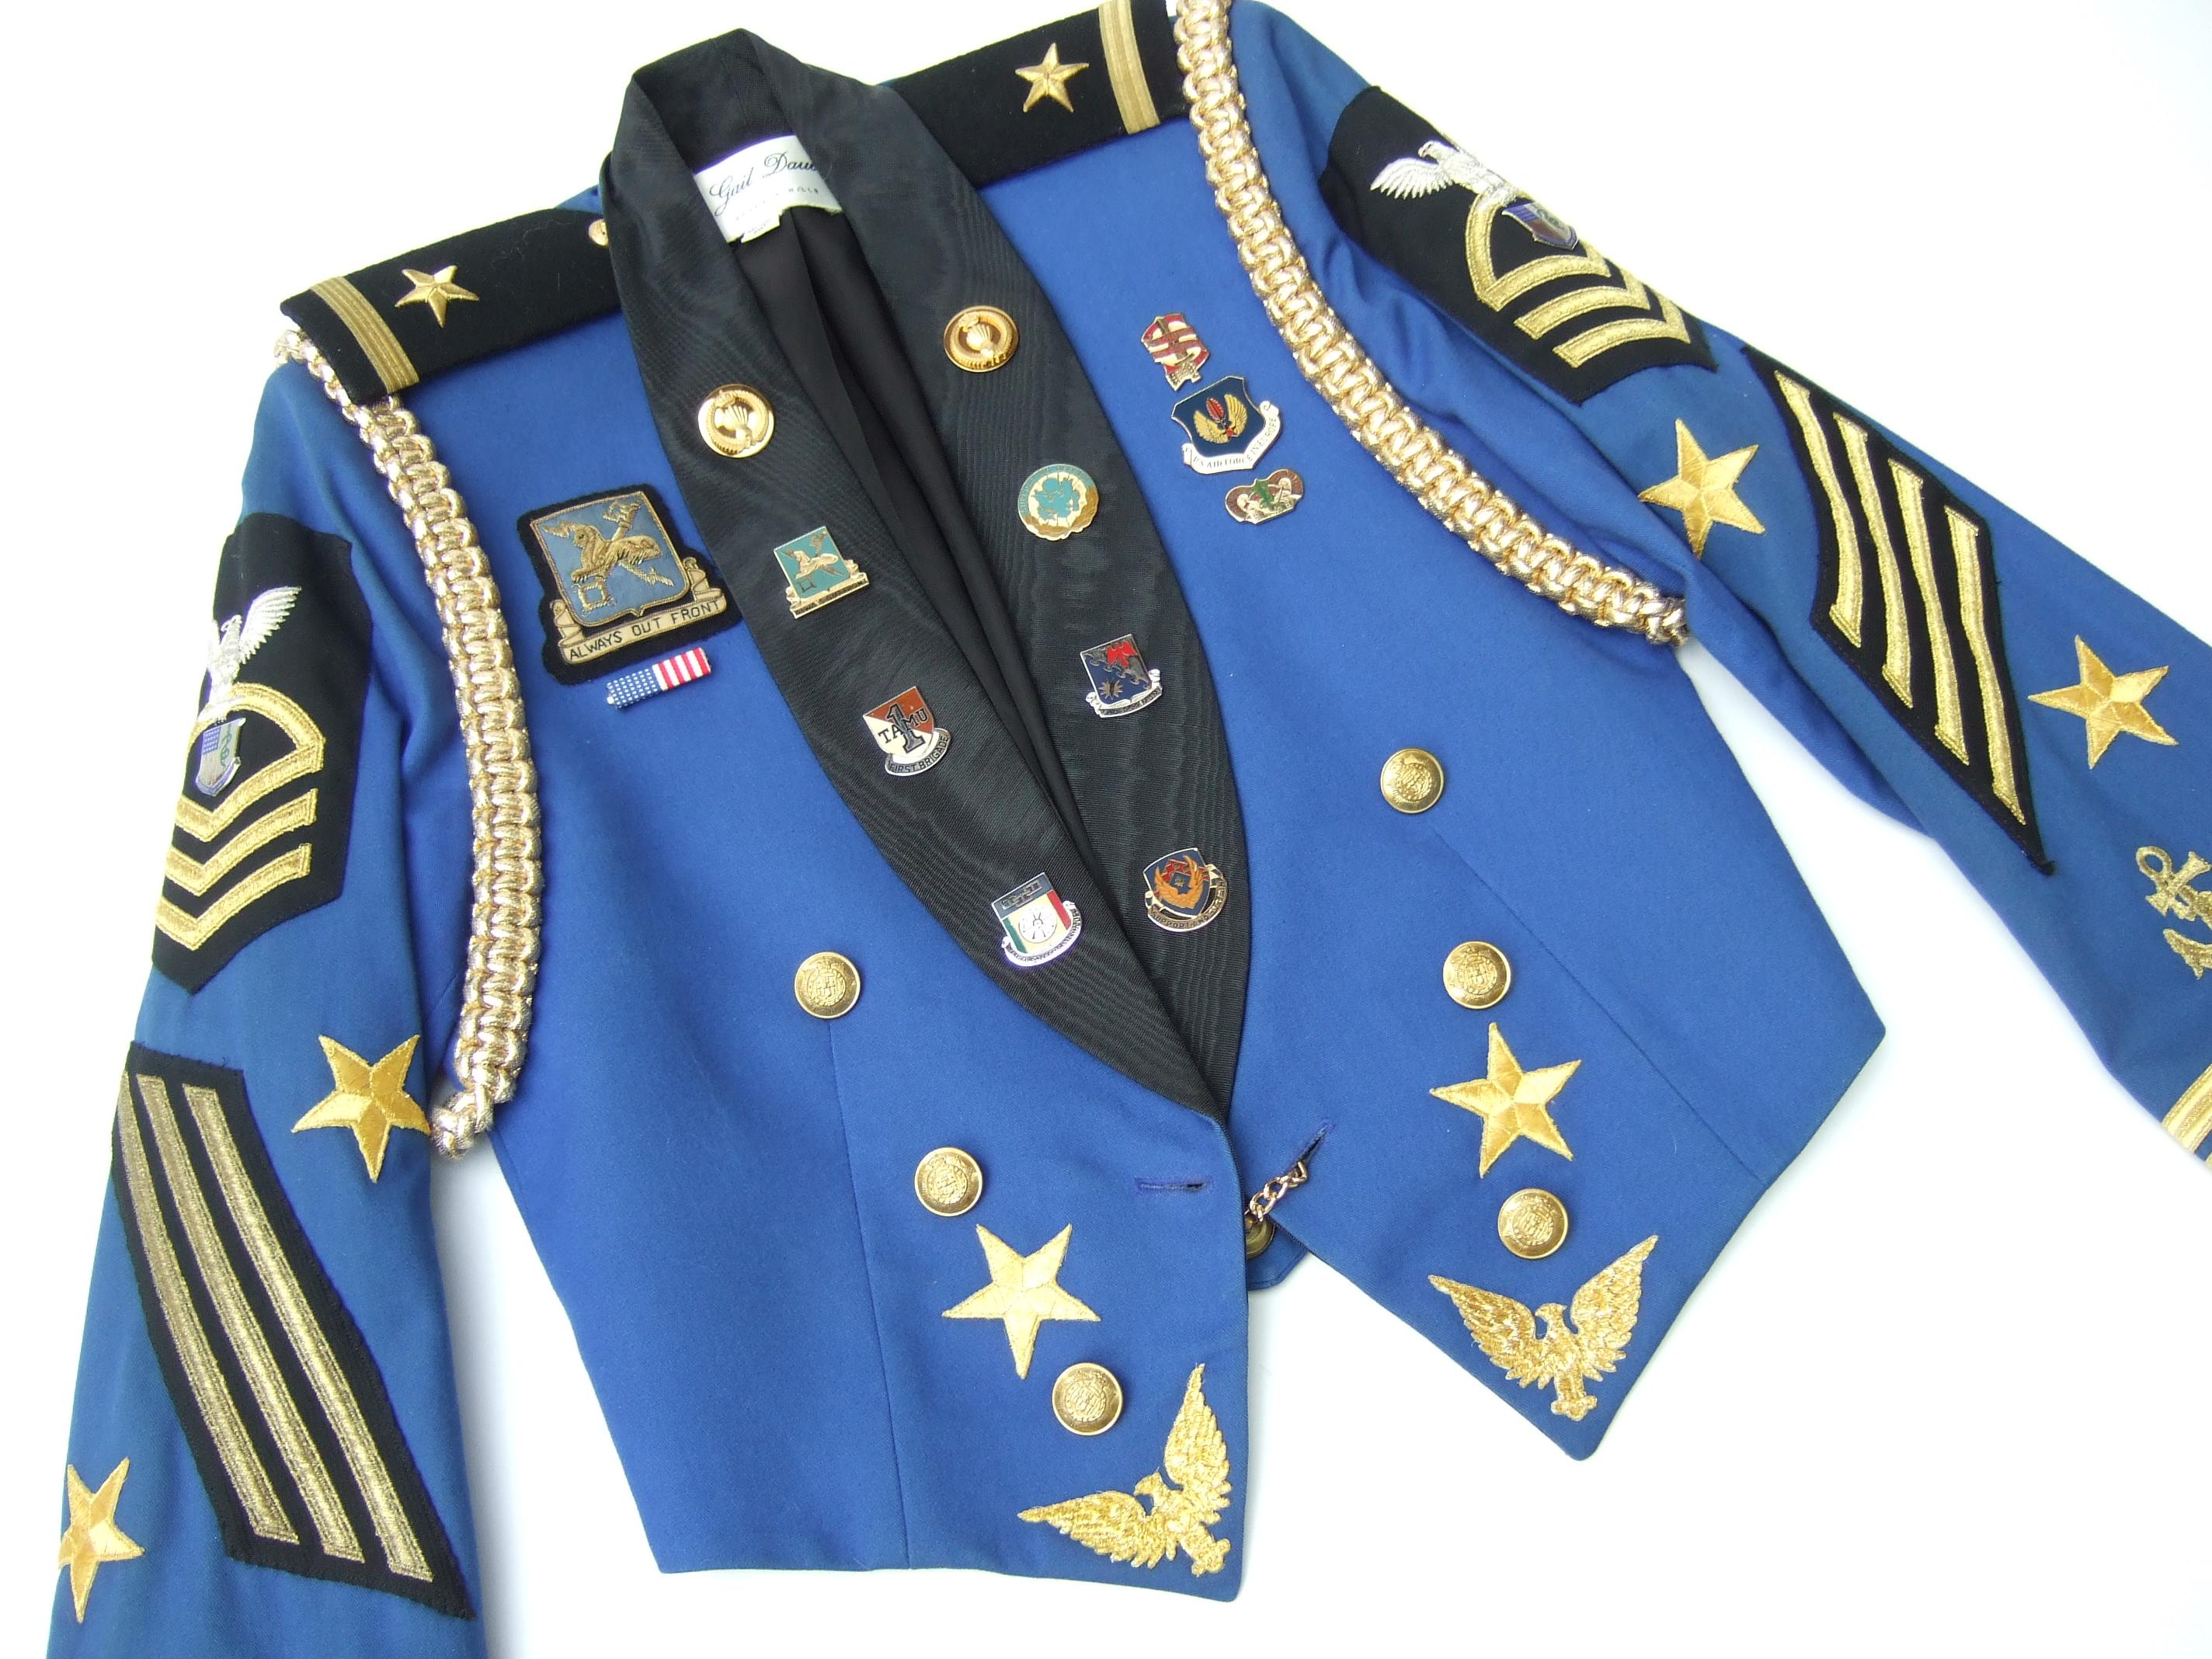 Damen Vintage Militär inspiriert beschnitten Medaillon Jacke entworfen von Gail Dauer Beverly Hills c 1980s 

Die einzigartige Jacke ist mit einer Sammlung von Luftwaffen- und Kriegsabzeichen aus Metall verziert.
Verziert mit applizierten goldenen